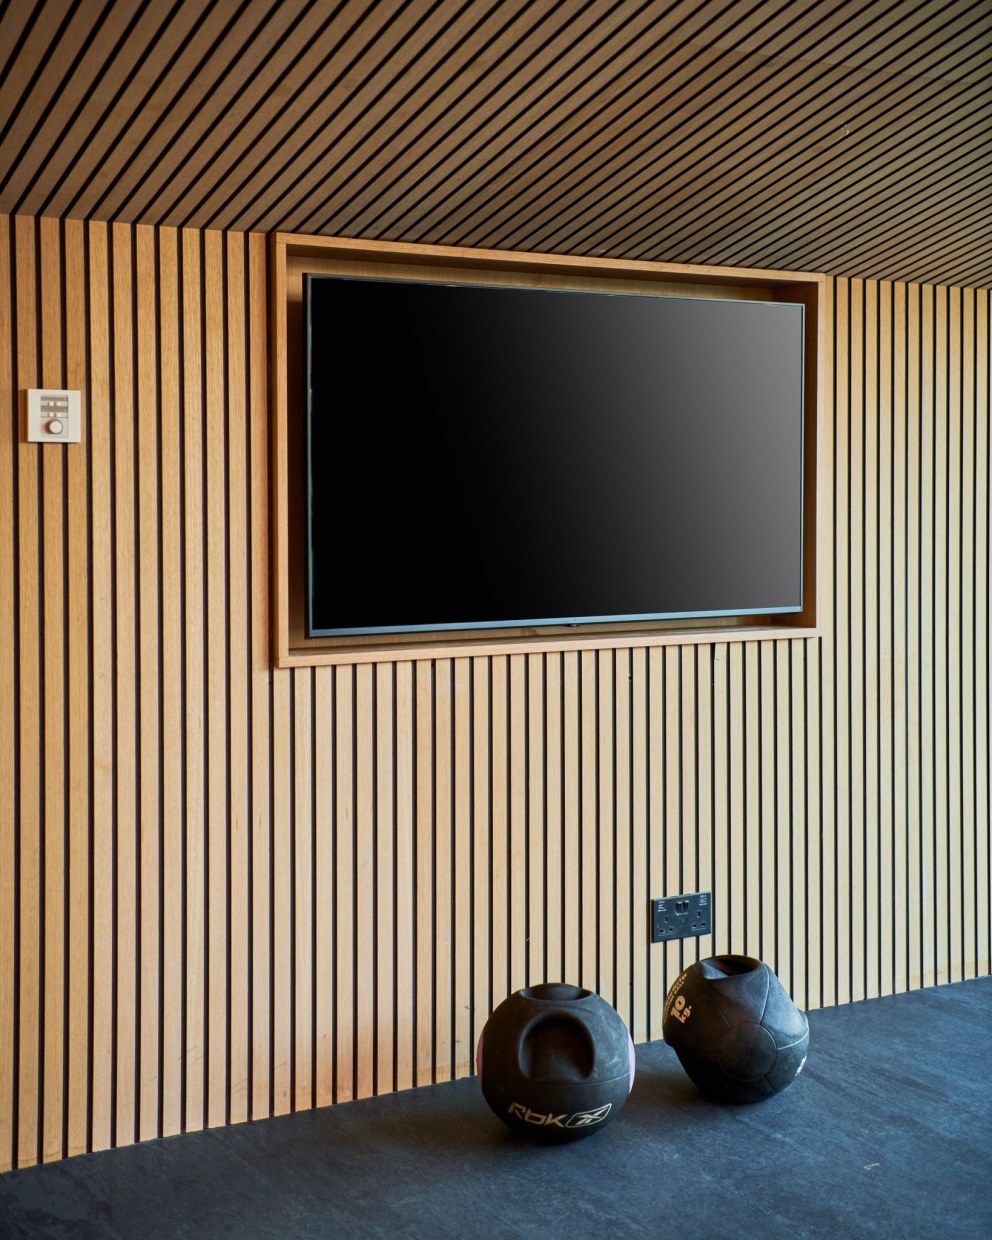 Home gym and entertainment space | Gym | Interior Designers